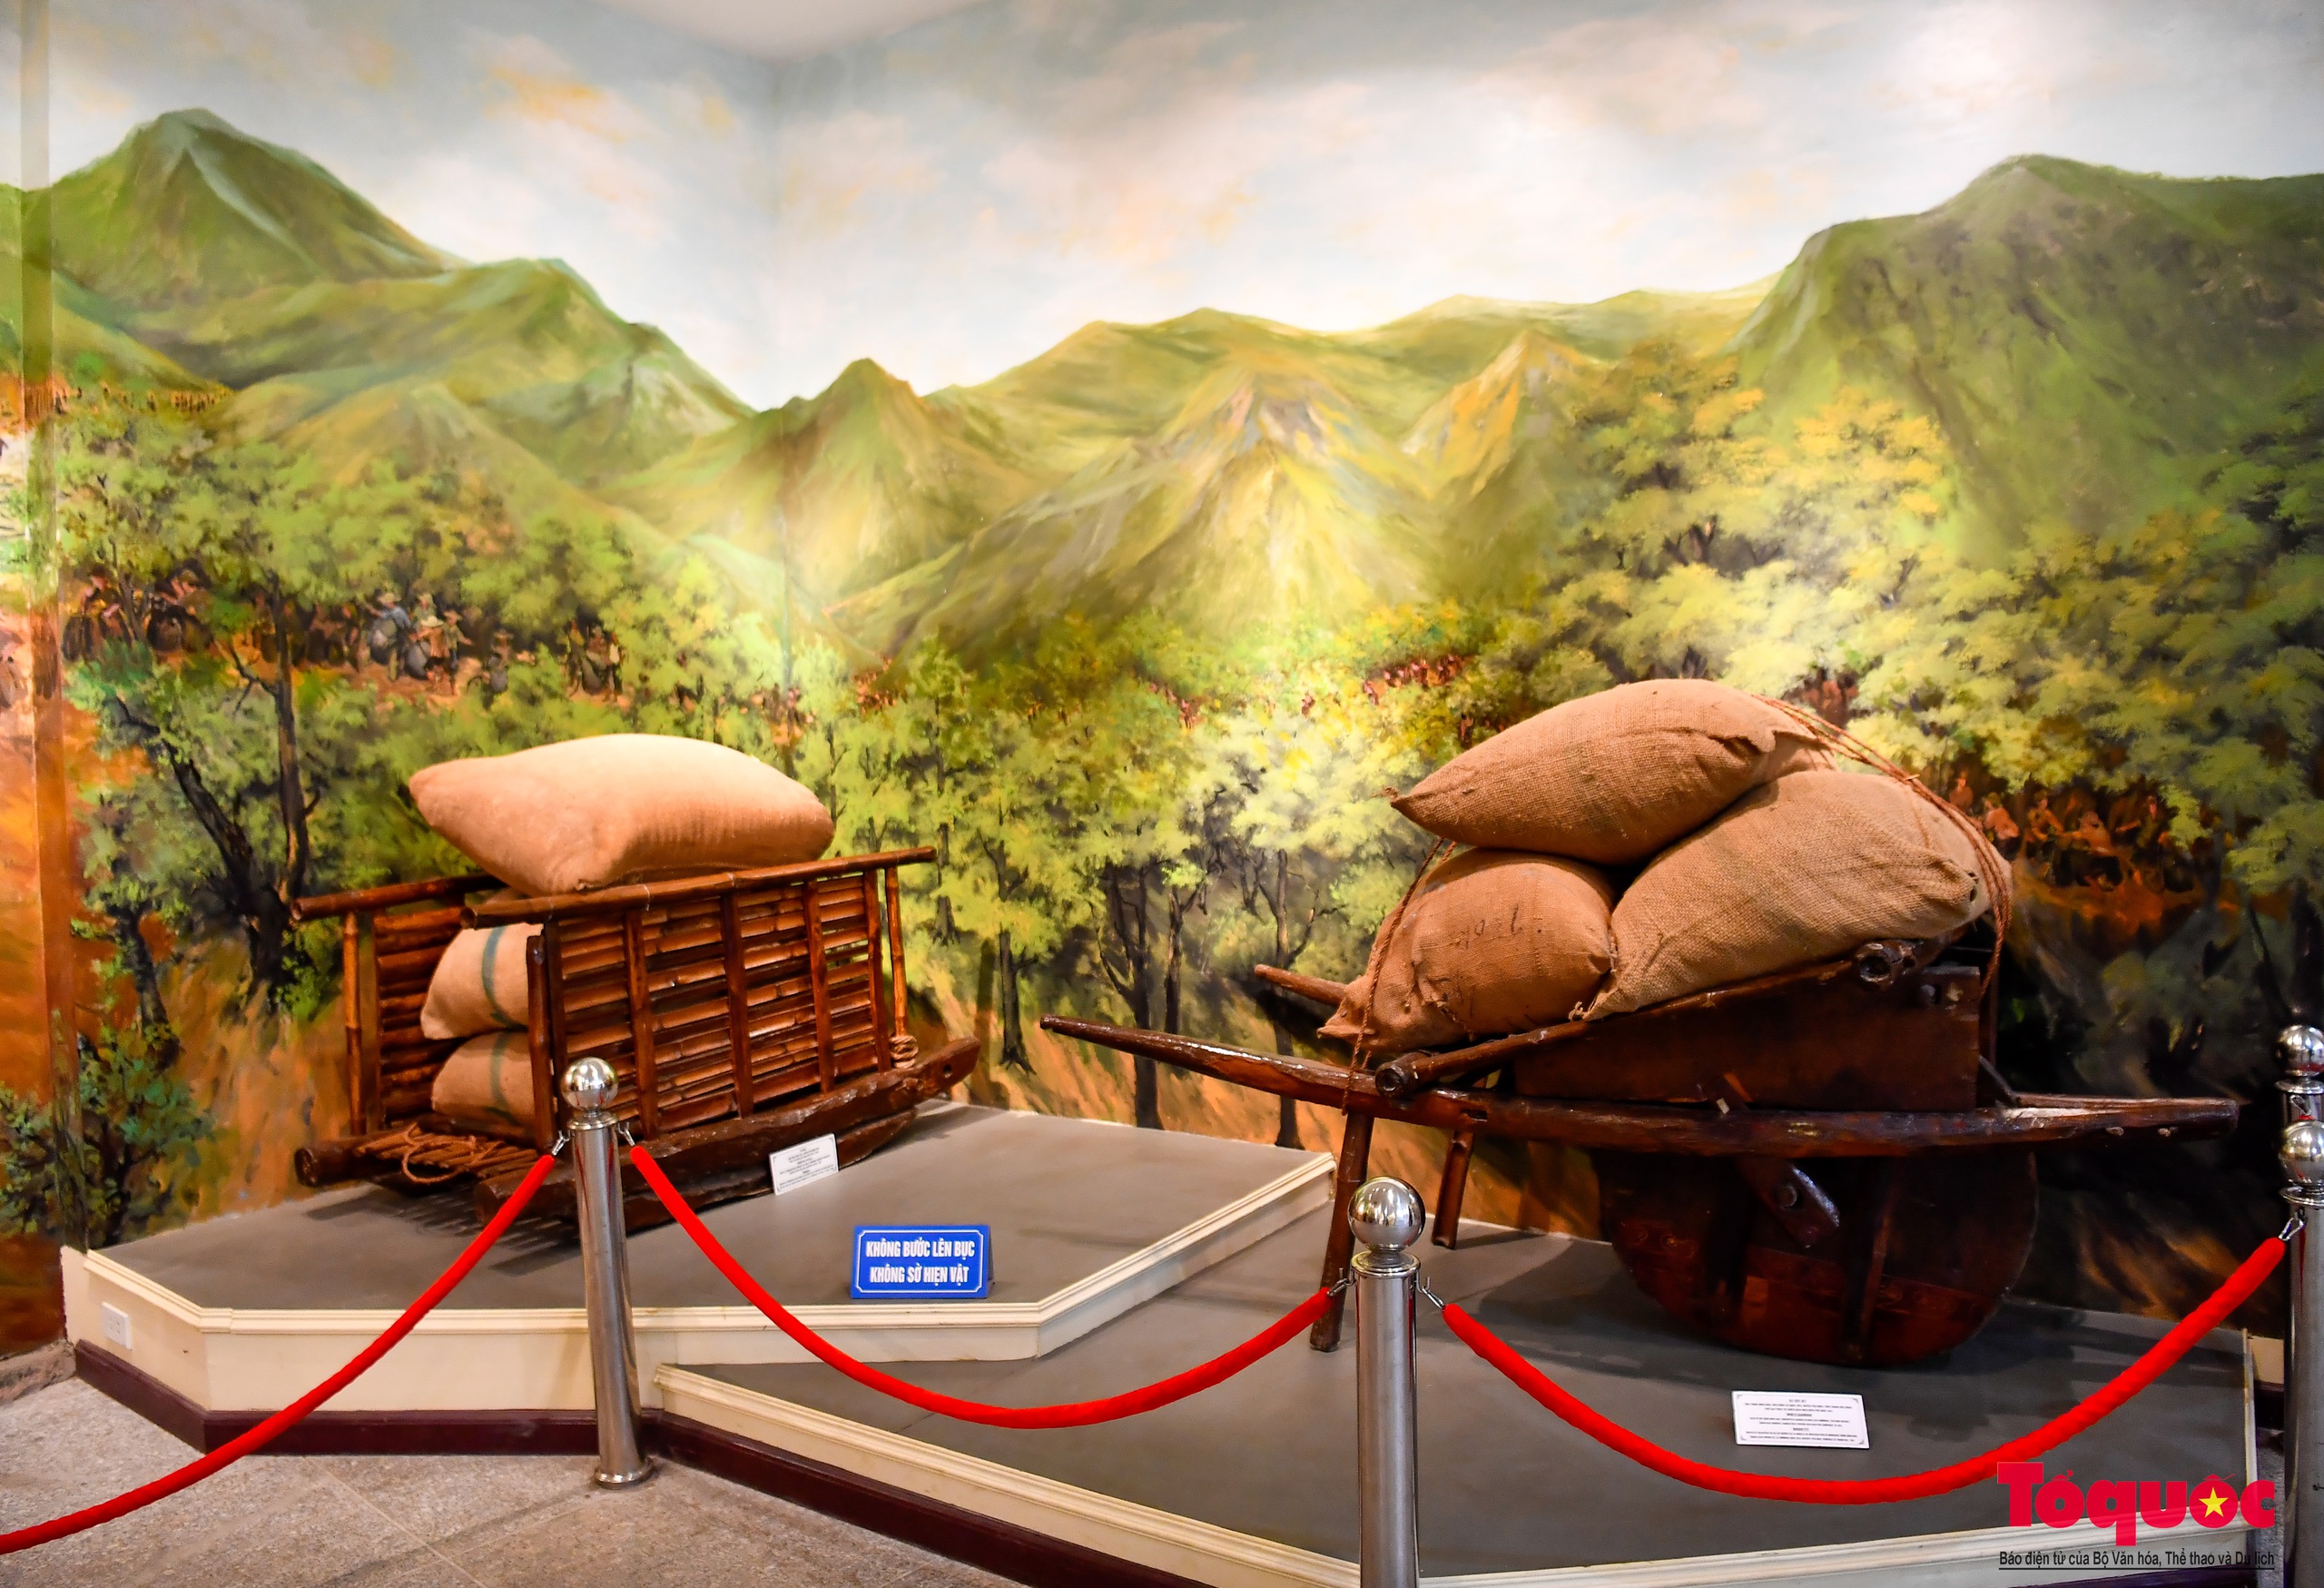 Bảo tàng Chiến thắng lịch sử Điện Biên Phủ - điểm đến ý nghĩa trong những ngày tháng 5 - Ảnh 11.